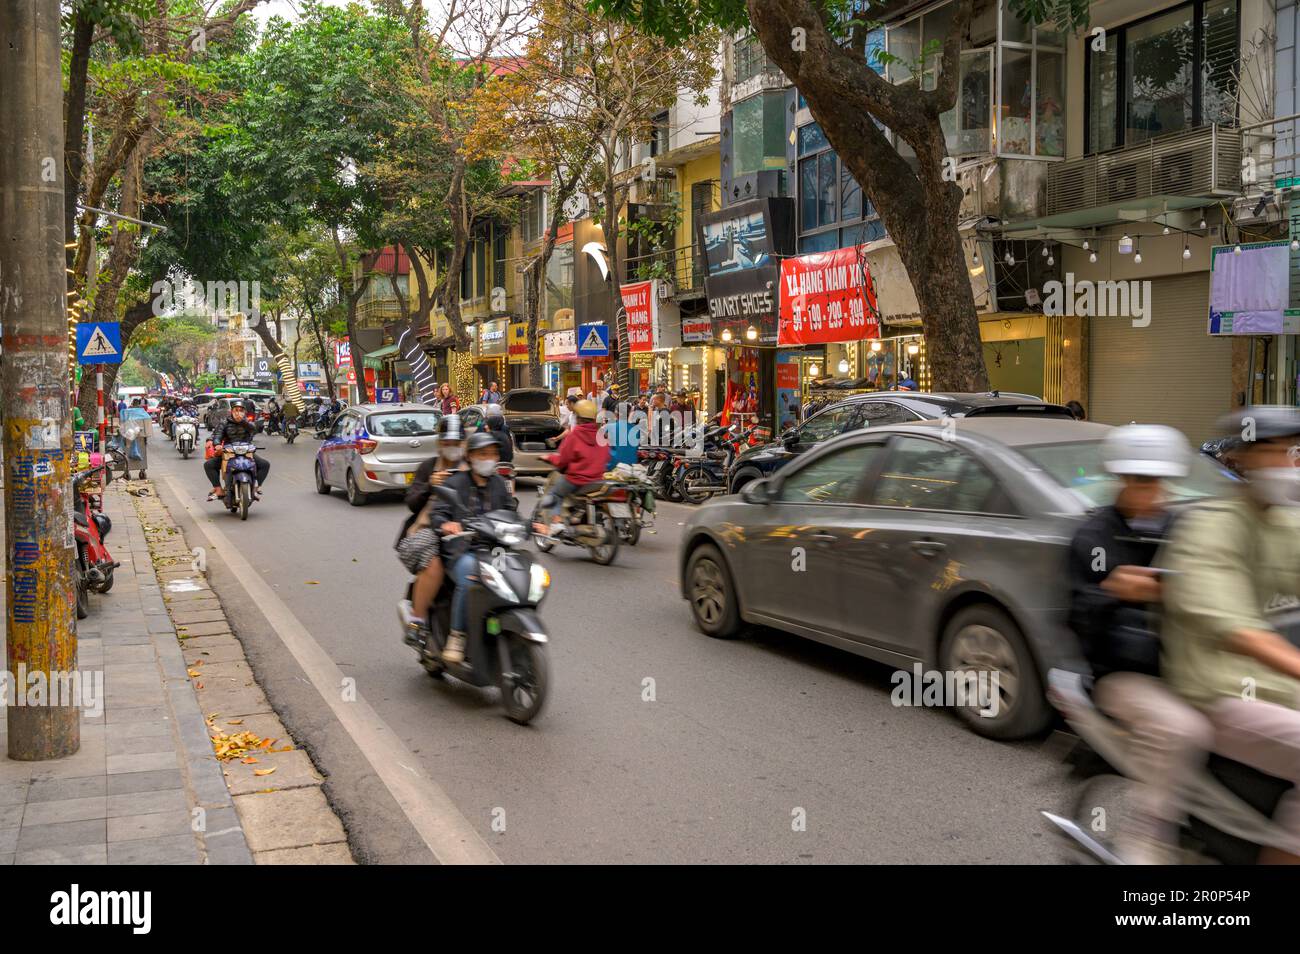 Strada trafficata scena con diversi modi di trasporto nel centro storico di Hanoi, Vietnam. Foto Stock